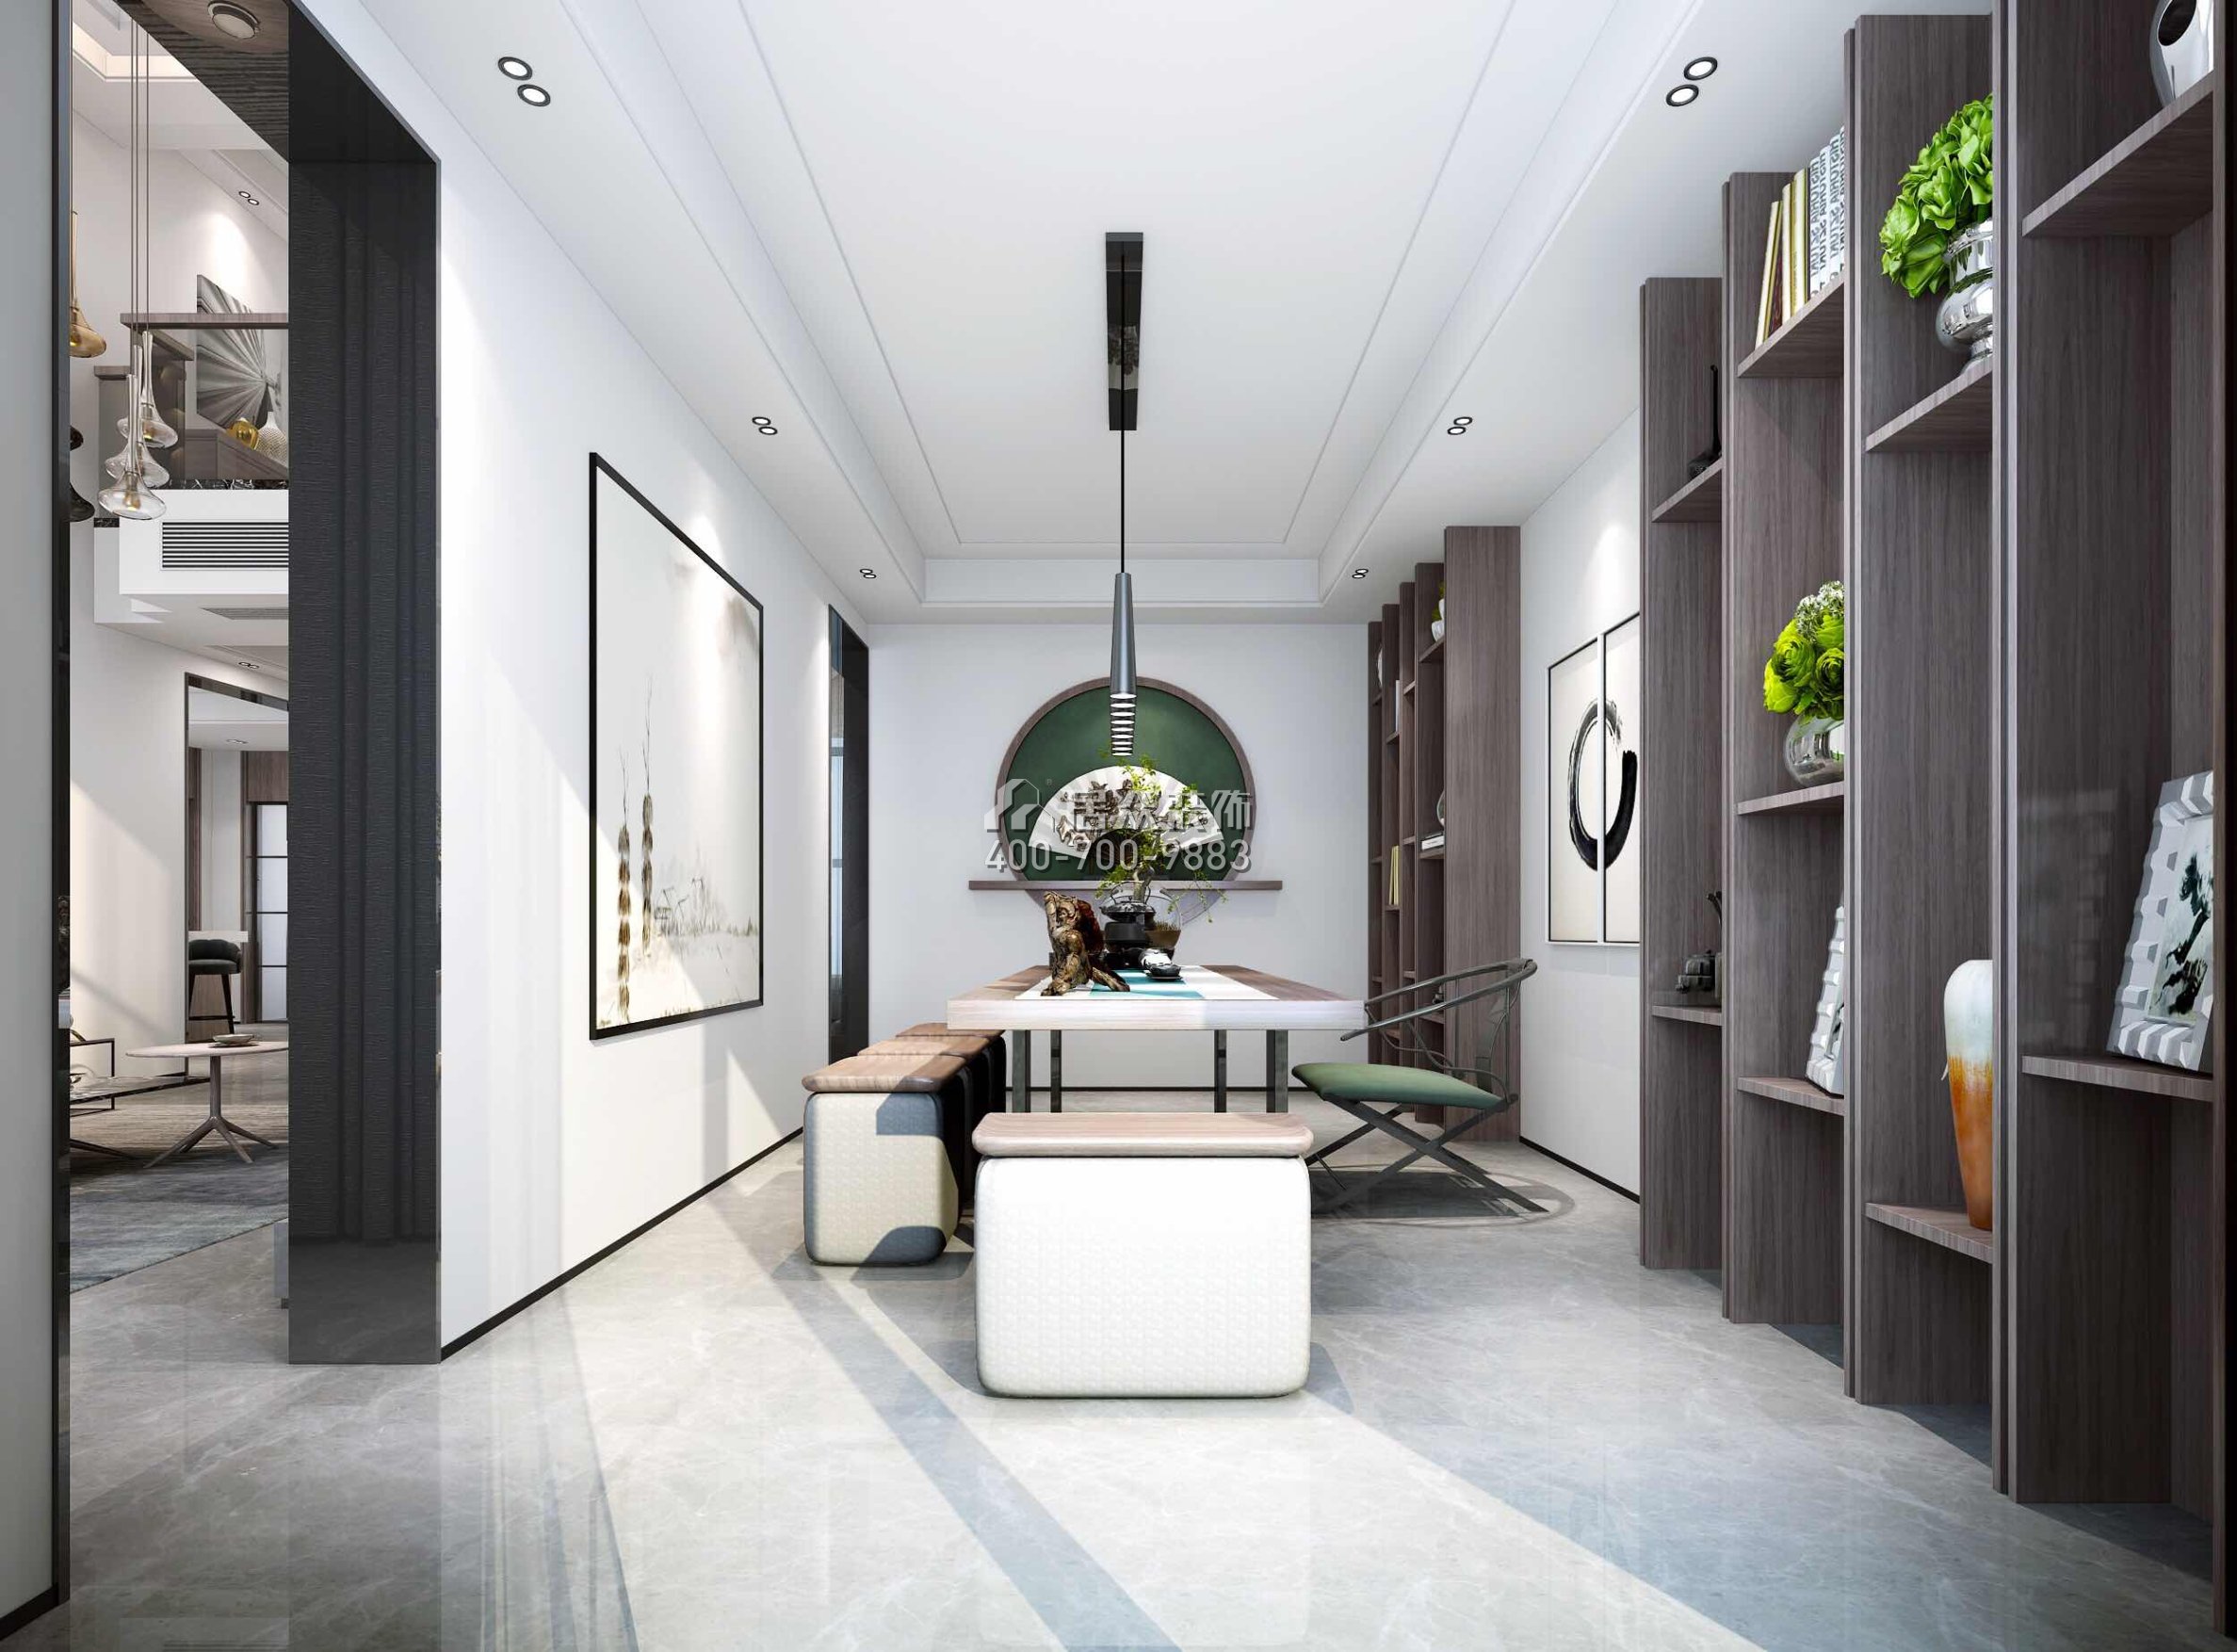 海逸豪庭321平方米现代简约风格别墅户型茶室装修效果图